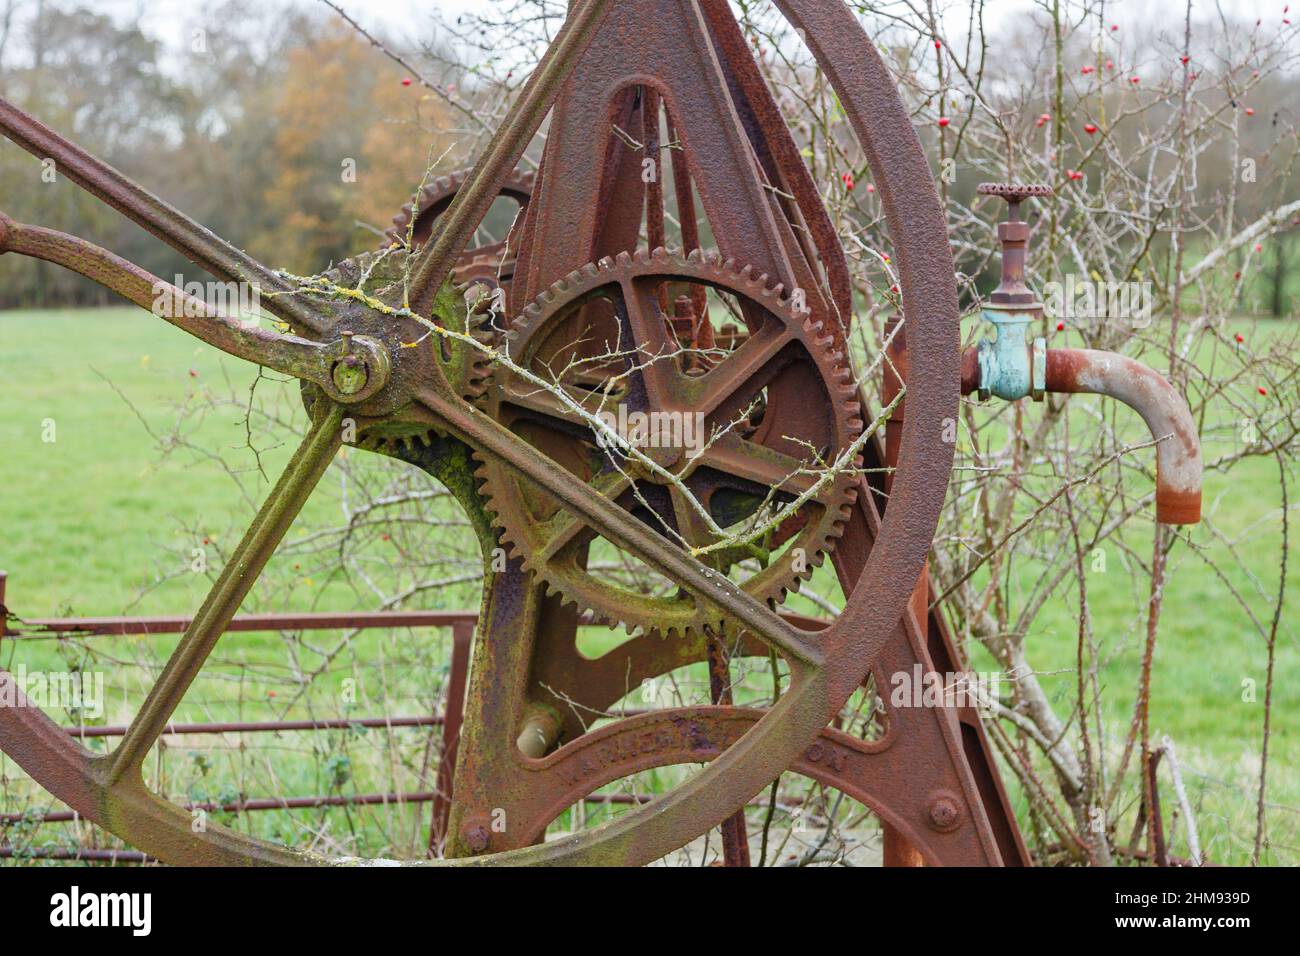 Des fûts et des roues d'époque de machines agricoles usées et roueuses, une pompe à eau de puits située dans un champ de Vann, près d'Ockley, Surrey, en hiver Banque D'Images